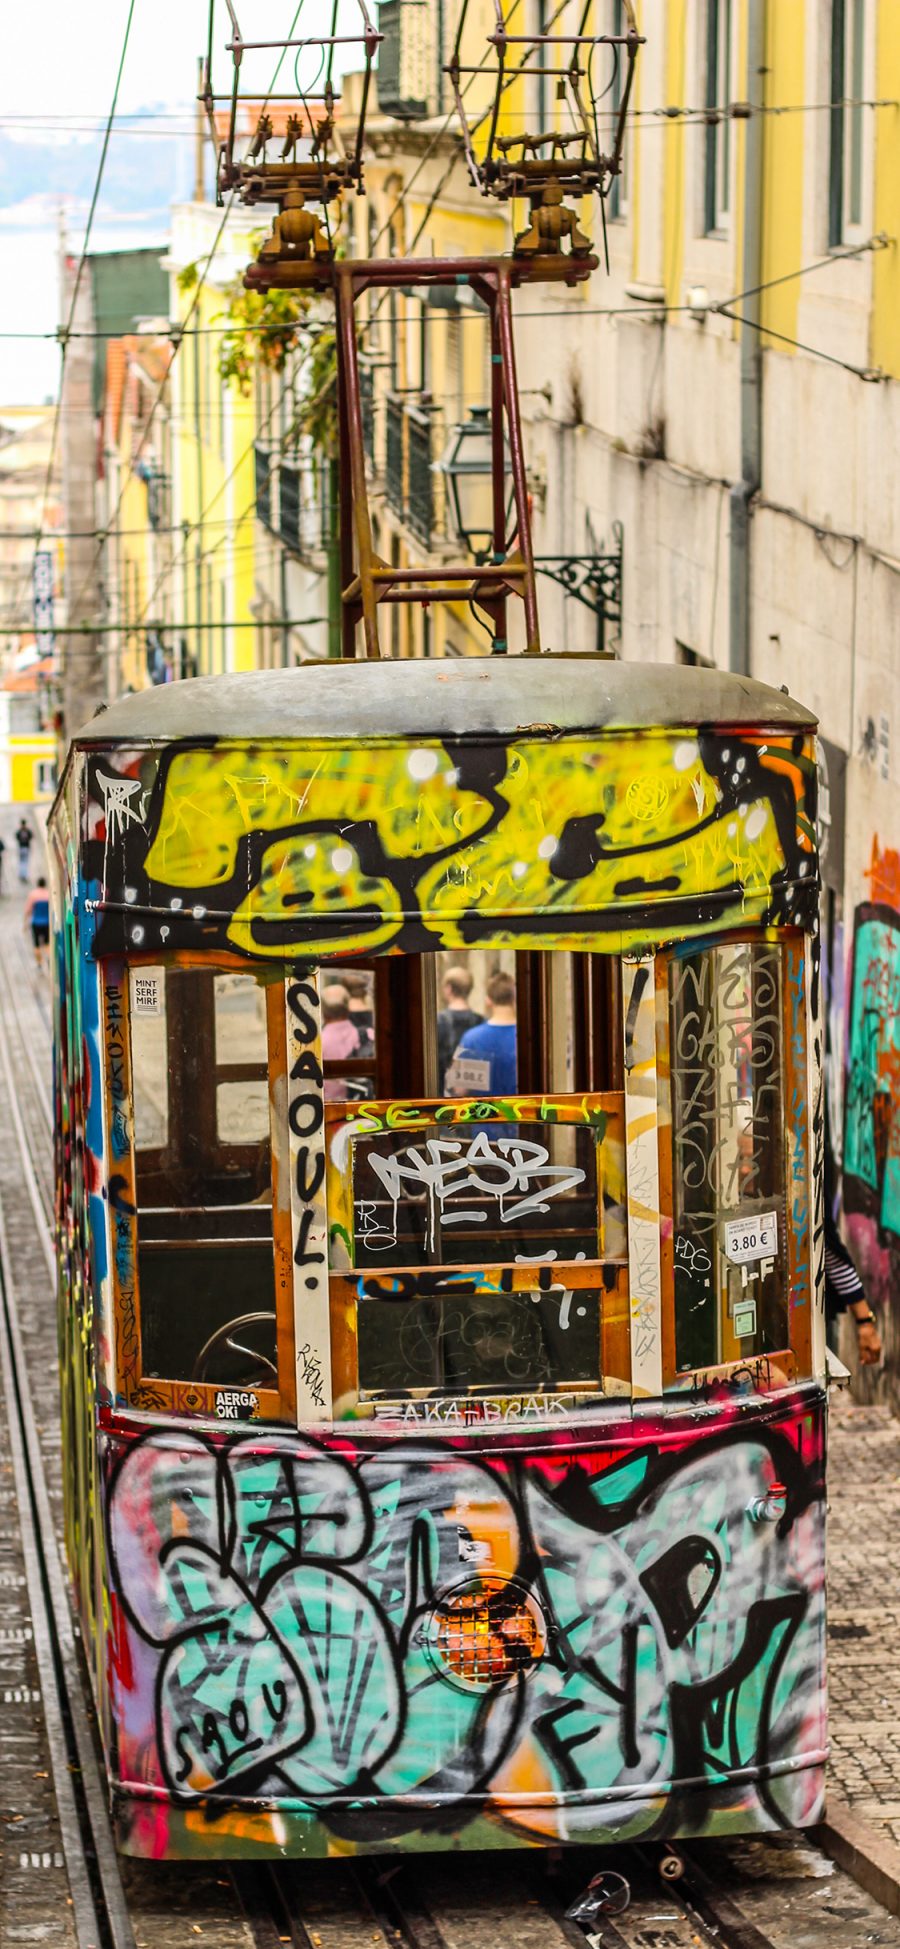 [2436×1125]电轨车 交通工具 涂鸦 街头 艺术 苹果手机壁纸图片